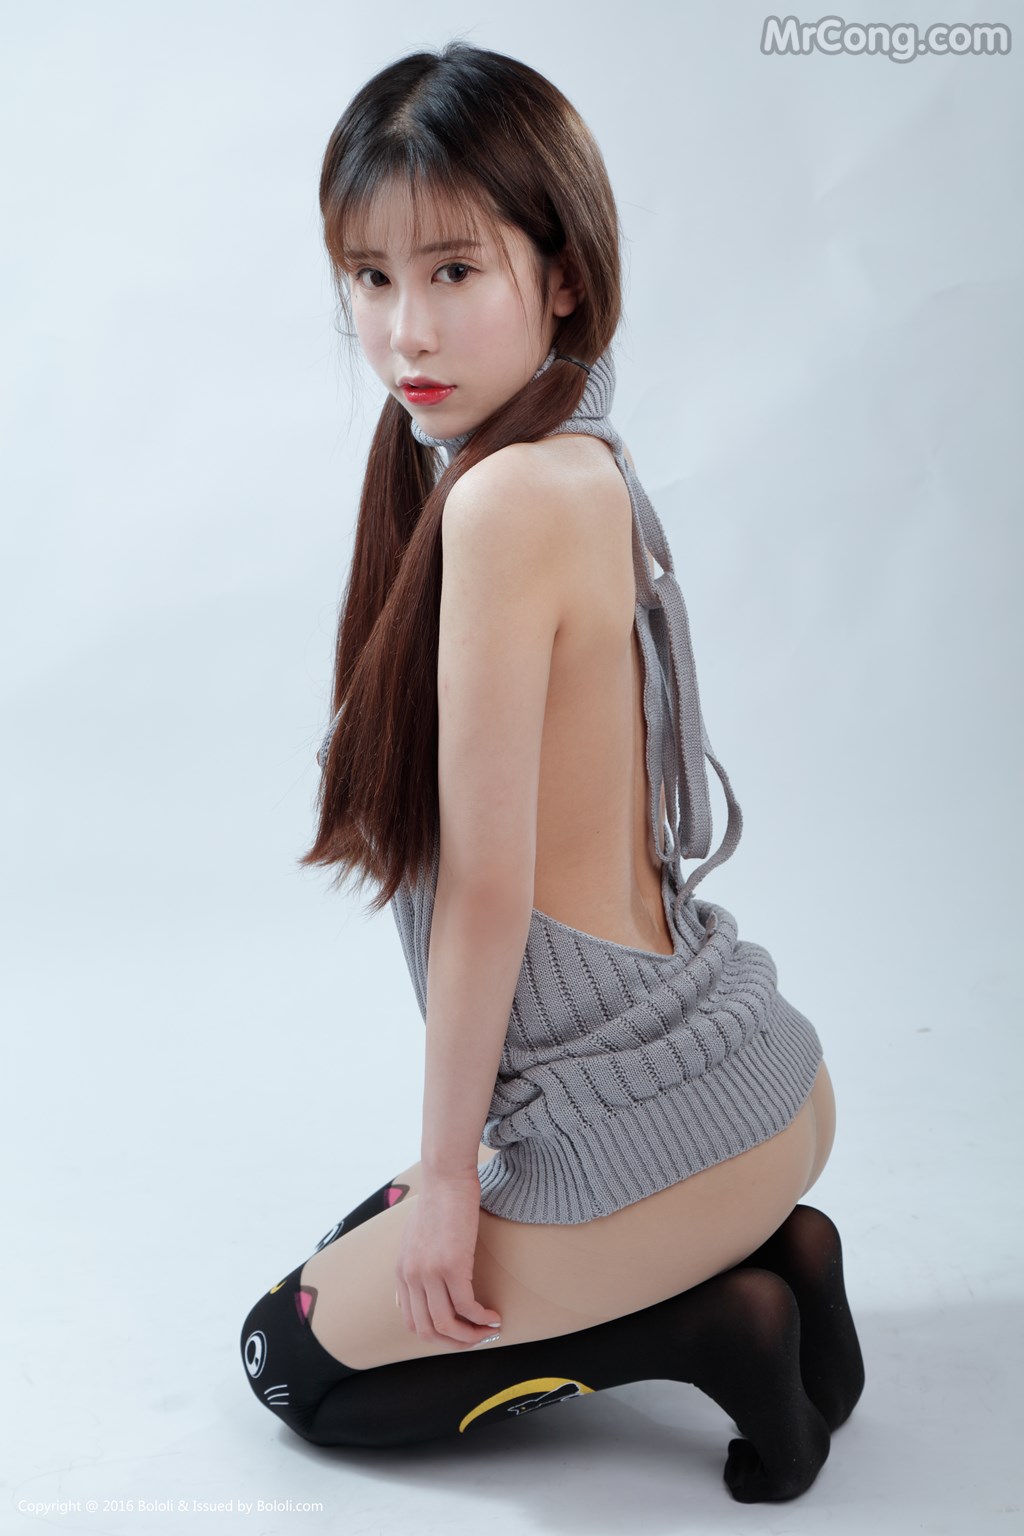 BoLoli 2017-06-20 Vol.072: Model Luo Li You You Jiang (萝莉 悠悠 酱) (42 photos)